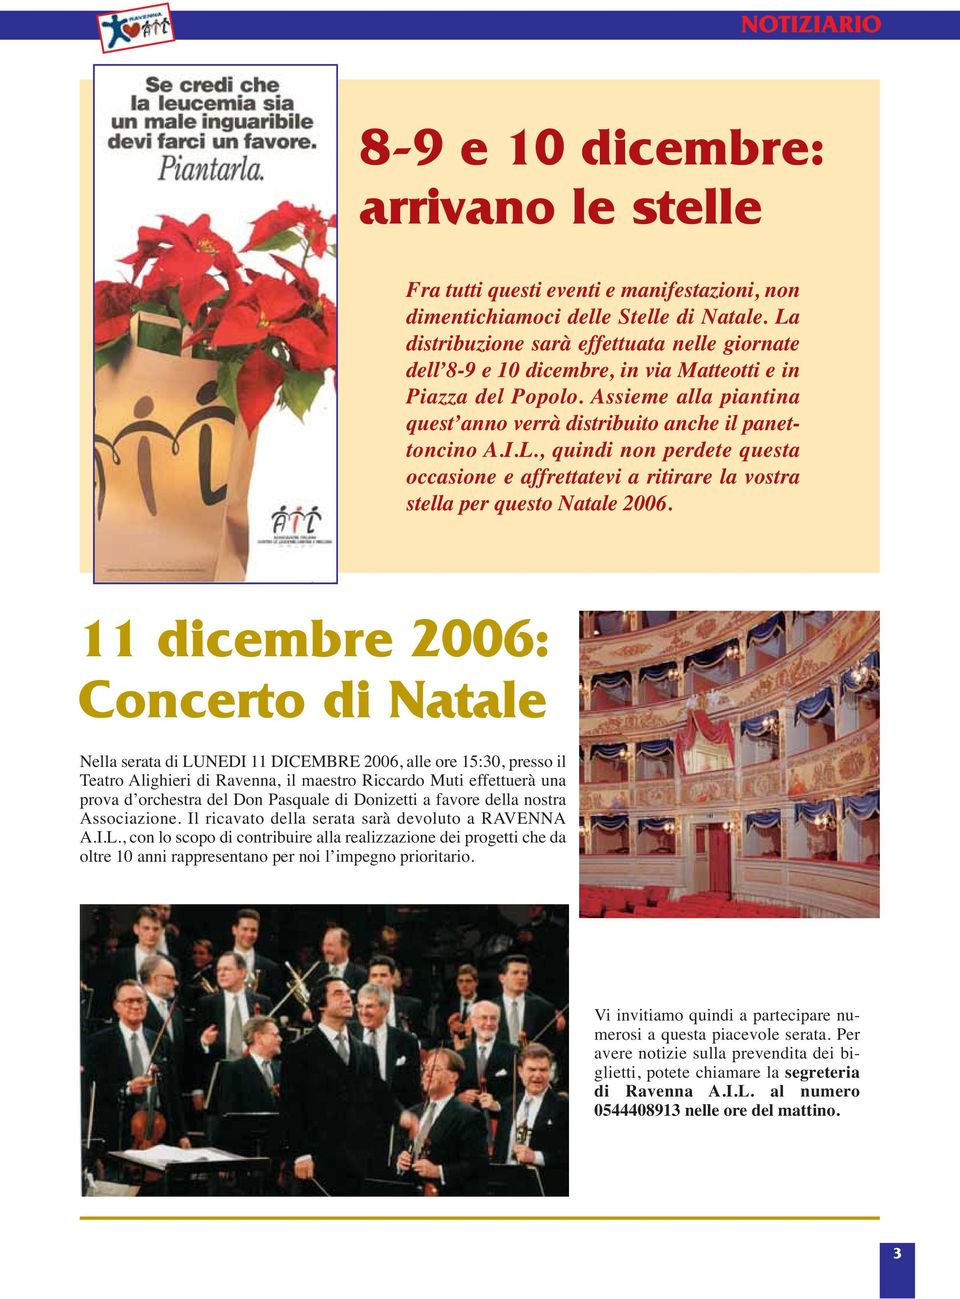 11 dicembre 2006: Concerto di Natale Nella serata di LUNEDI 11 DICEMBRE 2006, alle ore 15:30, presso il Teatro Alighieri di Ravenna, il maestro Riccardo Muti effettuerà una prova d orchestra del Don